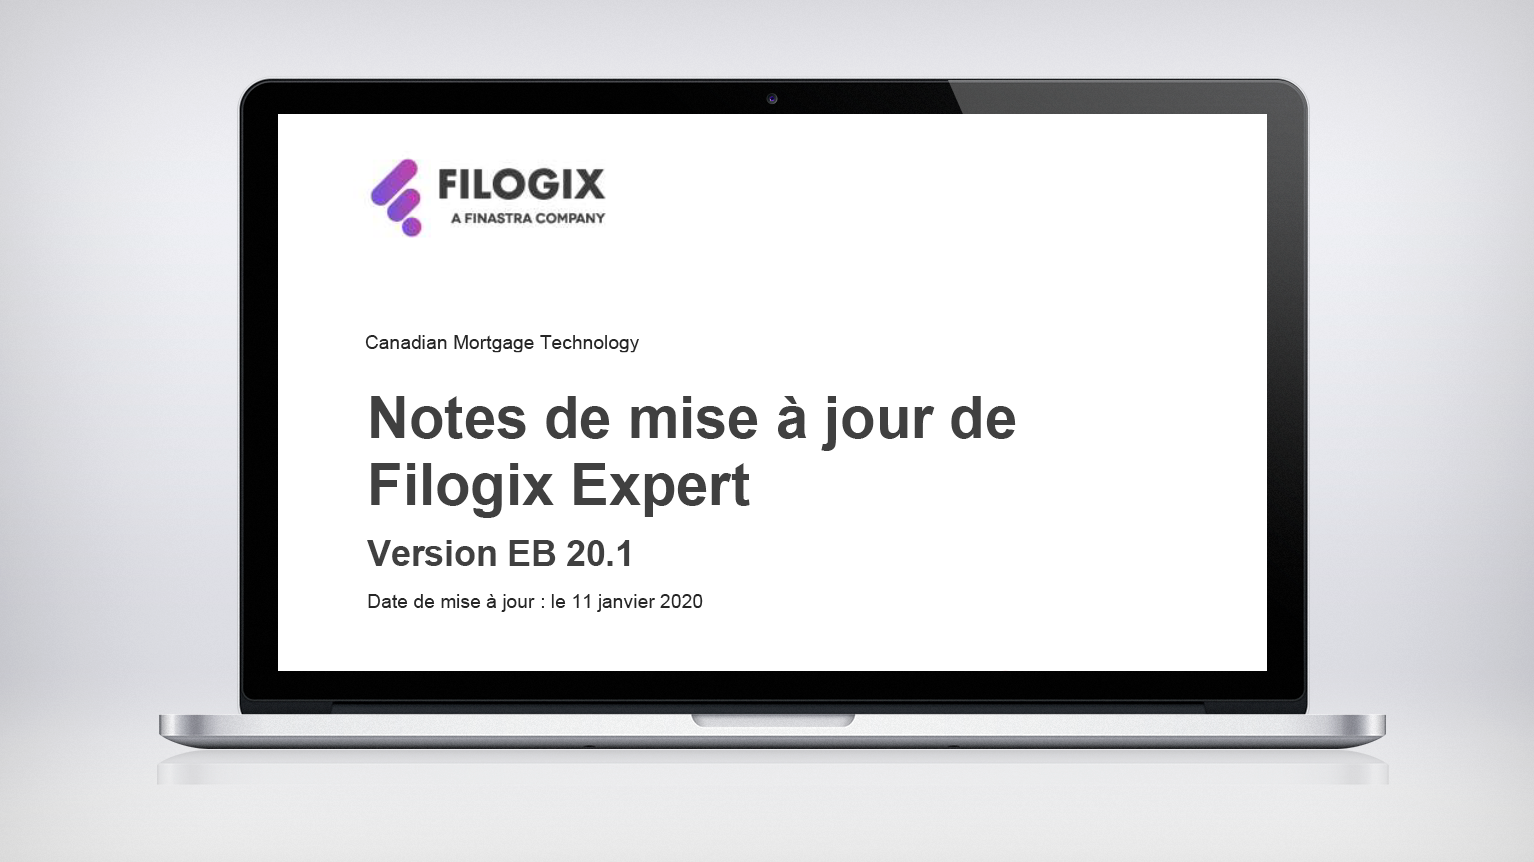 A laptop screen with the header "Notes de mise à jour de Filogix Expert"